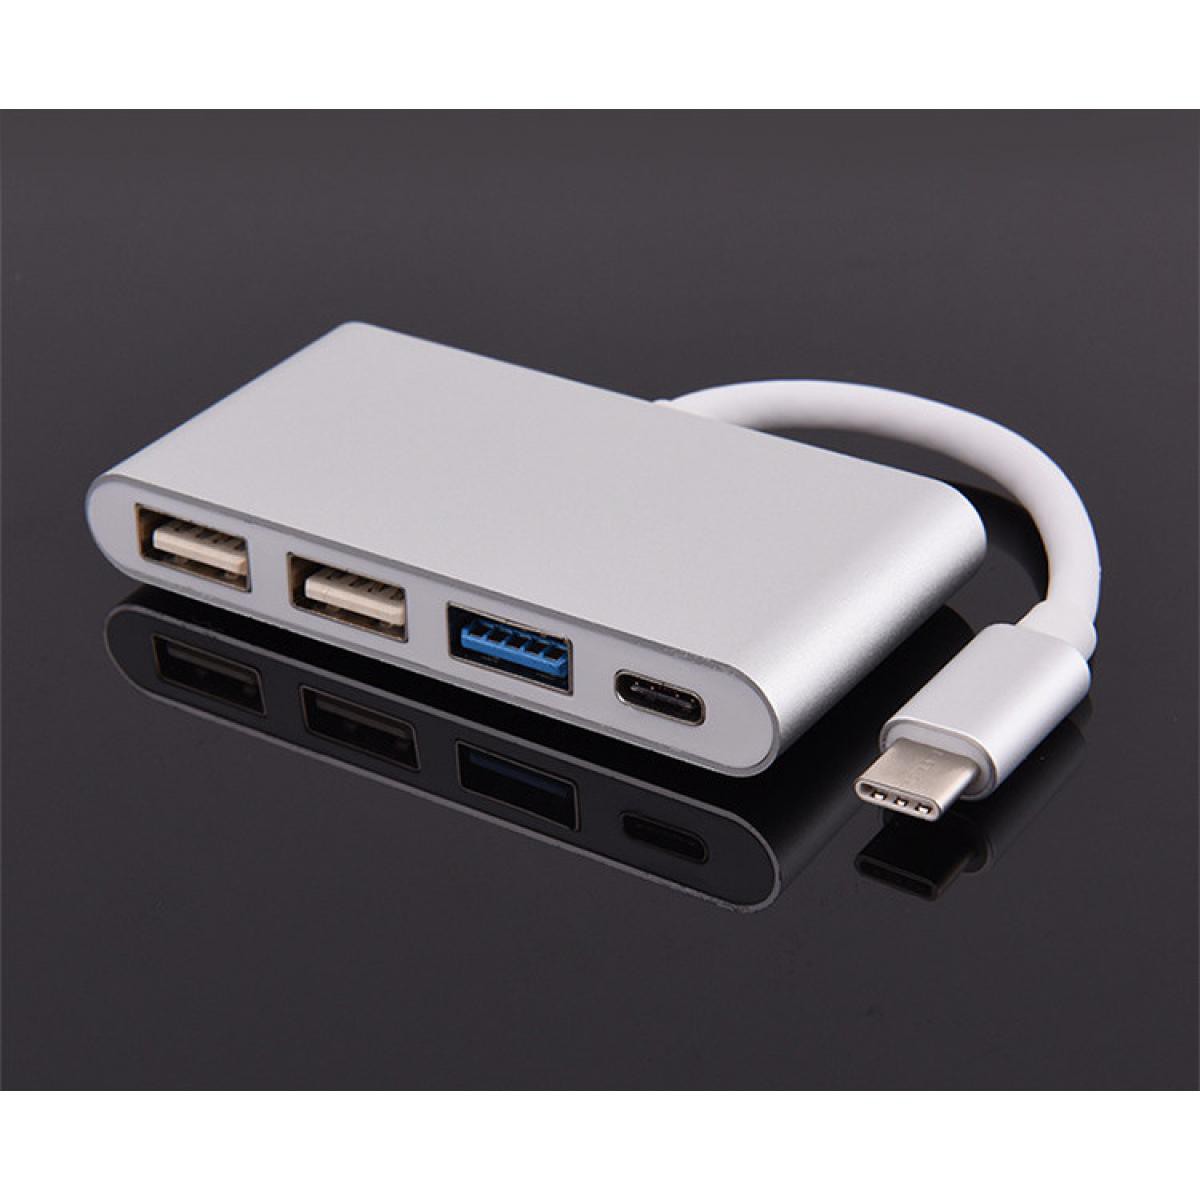 Shot - Multi Adaptateur 4 en 1 Type C pour ONEPLUS 6 Smartphone Hub 2 ports USB 2.0 1 Port USB 3.0 (ARGENT) - Hub